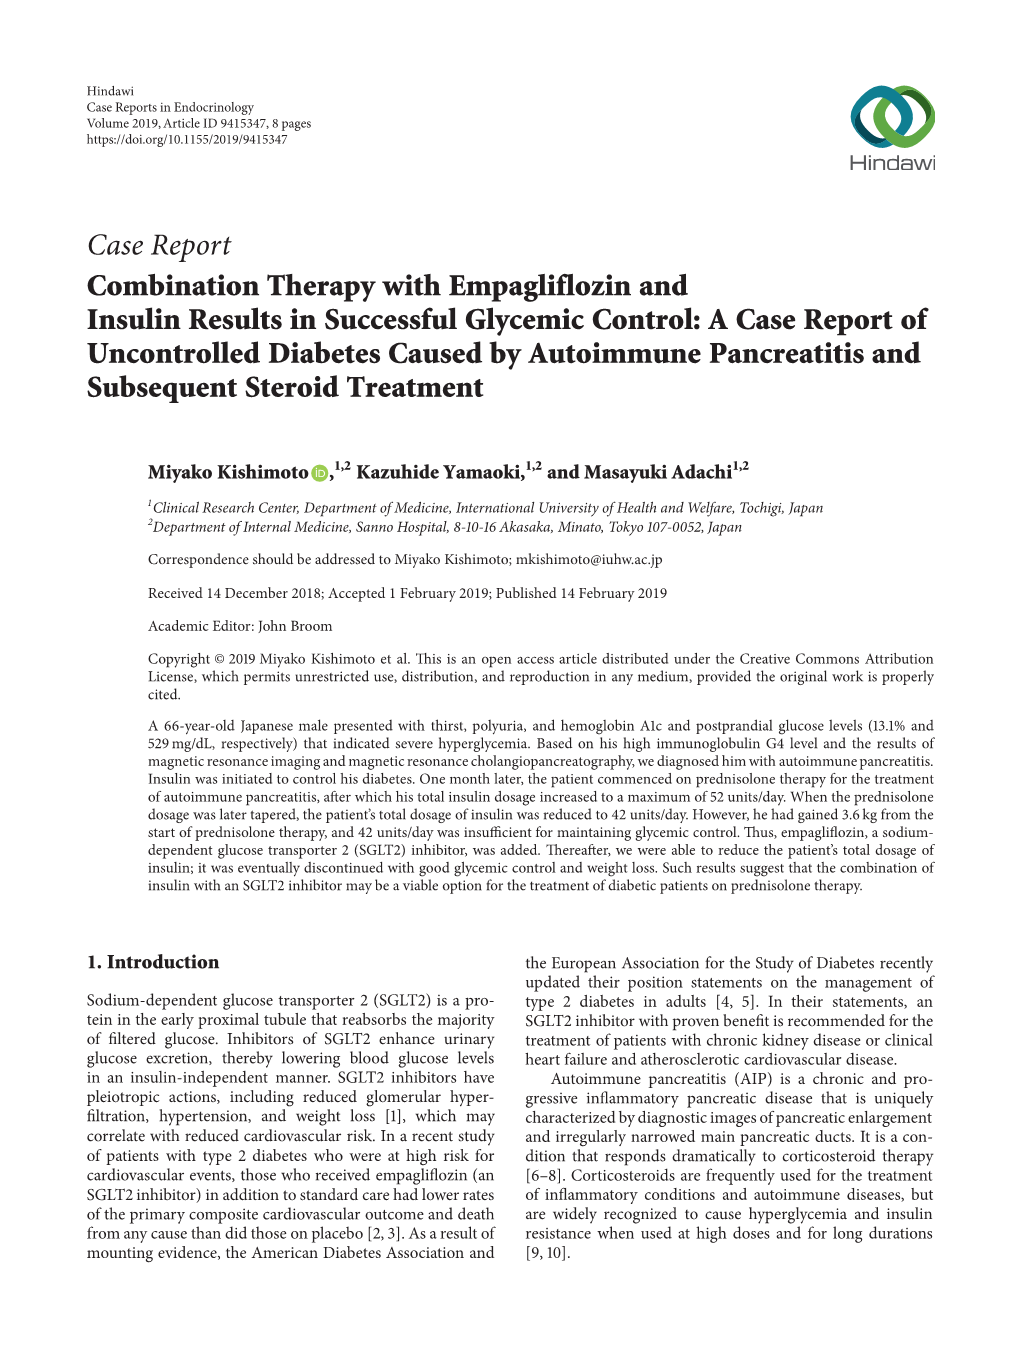 Case Report Combination Therapy with Empagliflozin and Insulin